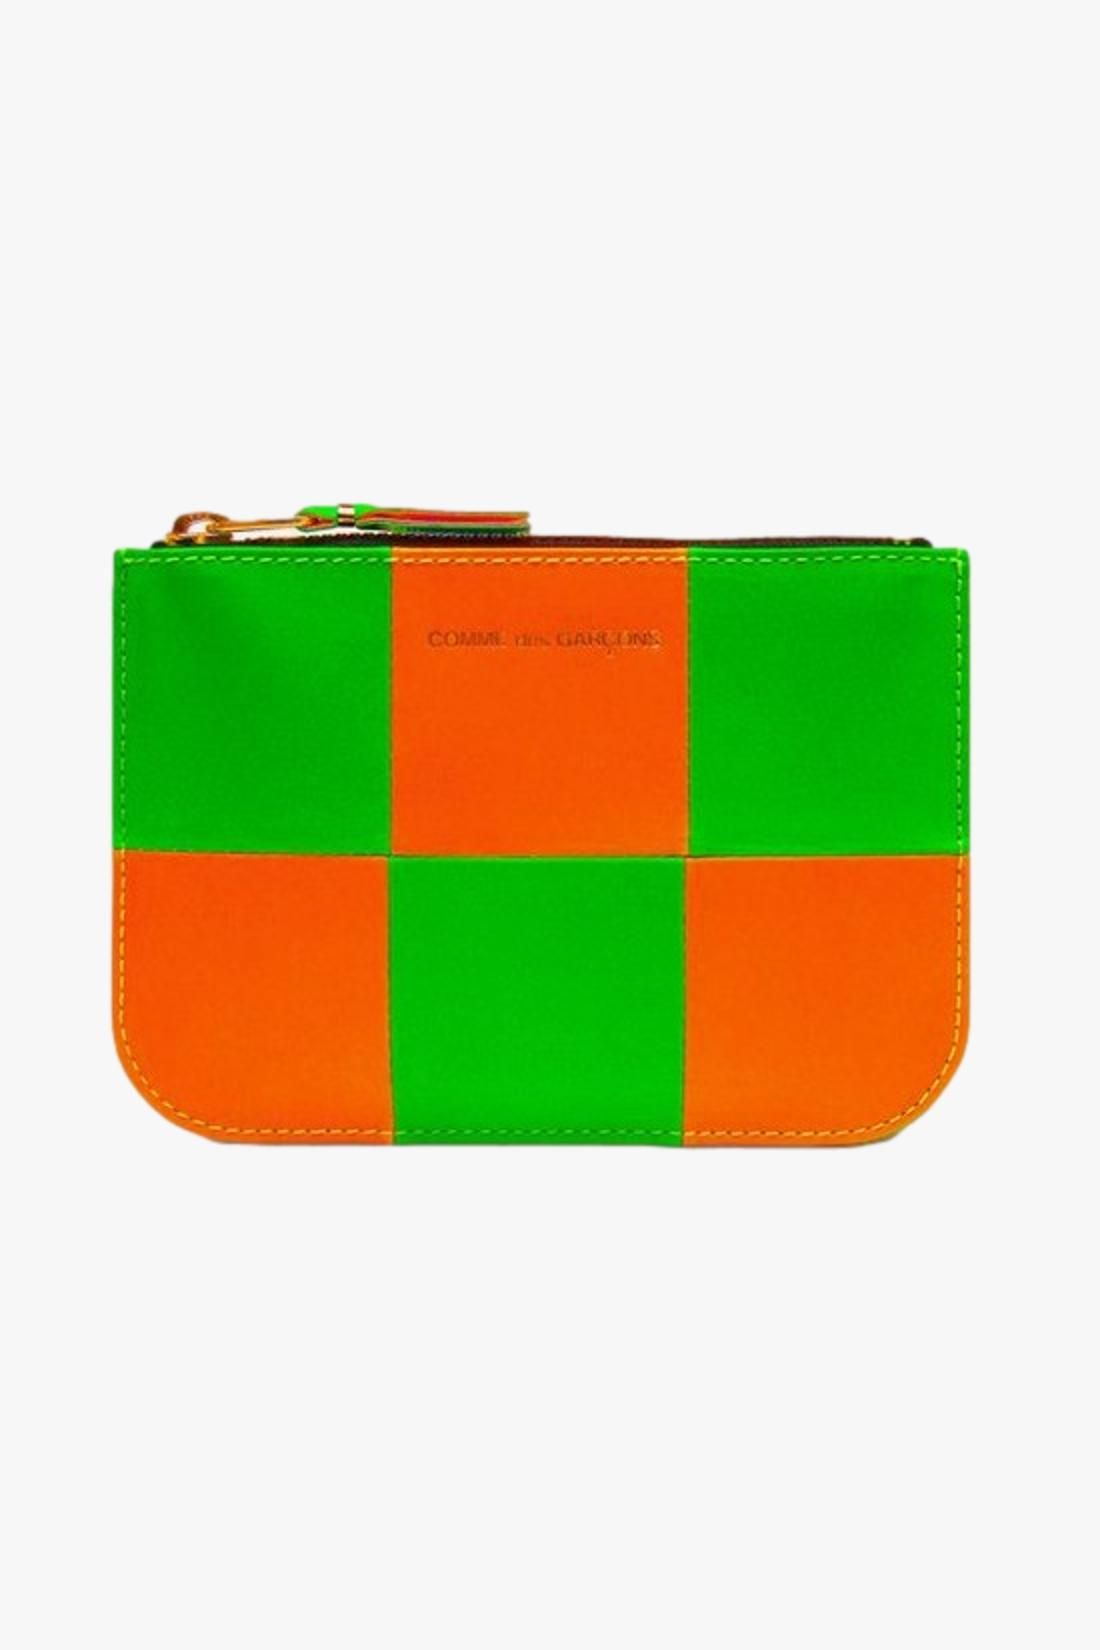 COMME DES GARÇONS WALLETS / Cdg wallet fluo squares Orange green